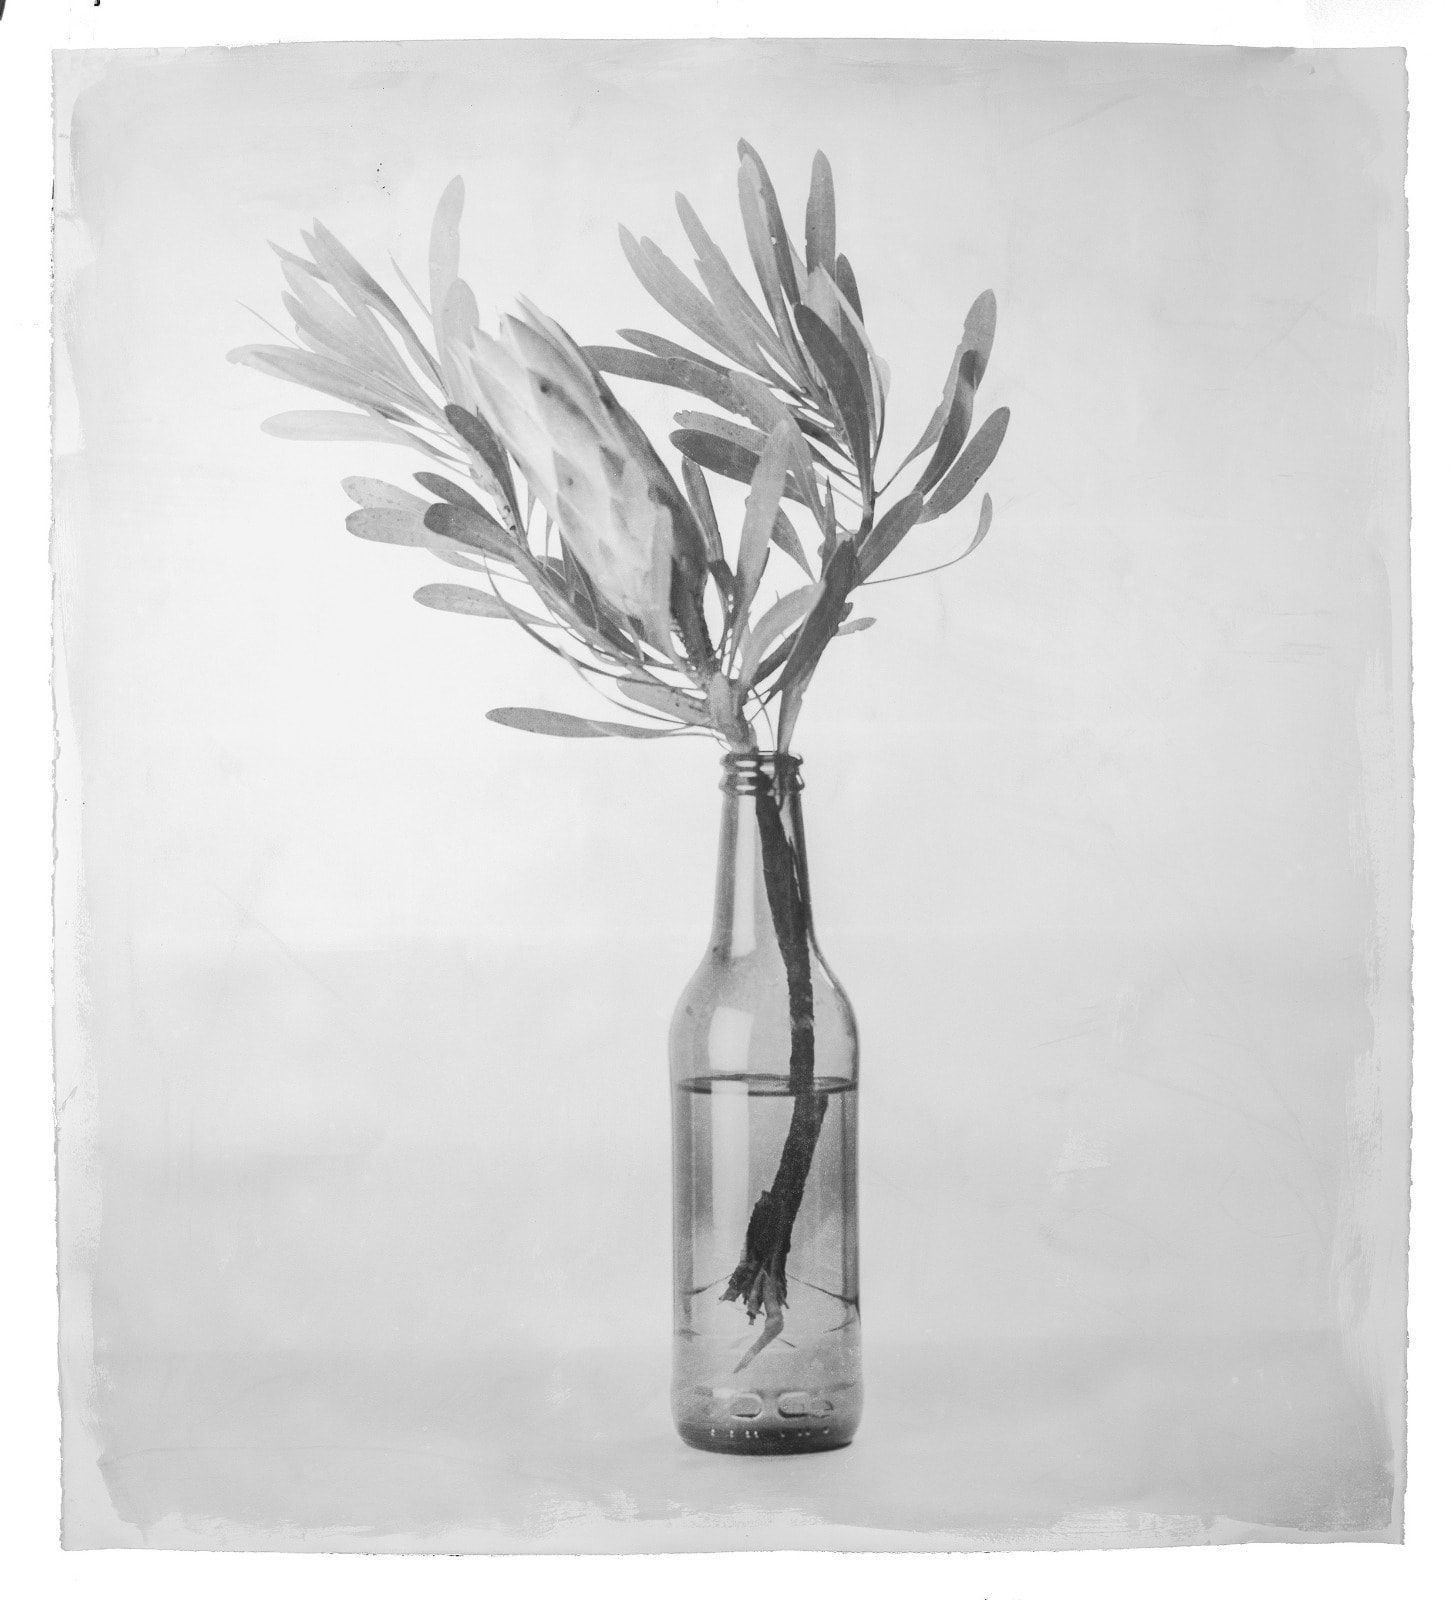 Stephen Inggs, Protea in Bottle, 2022